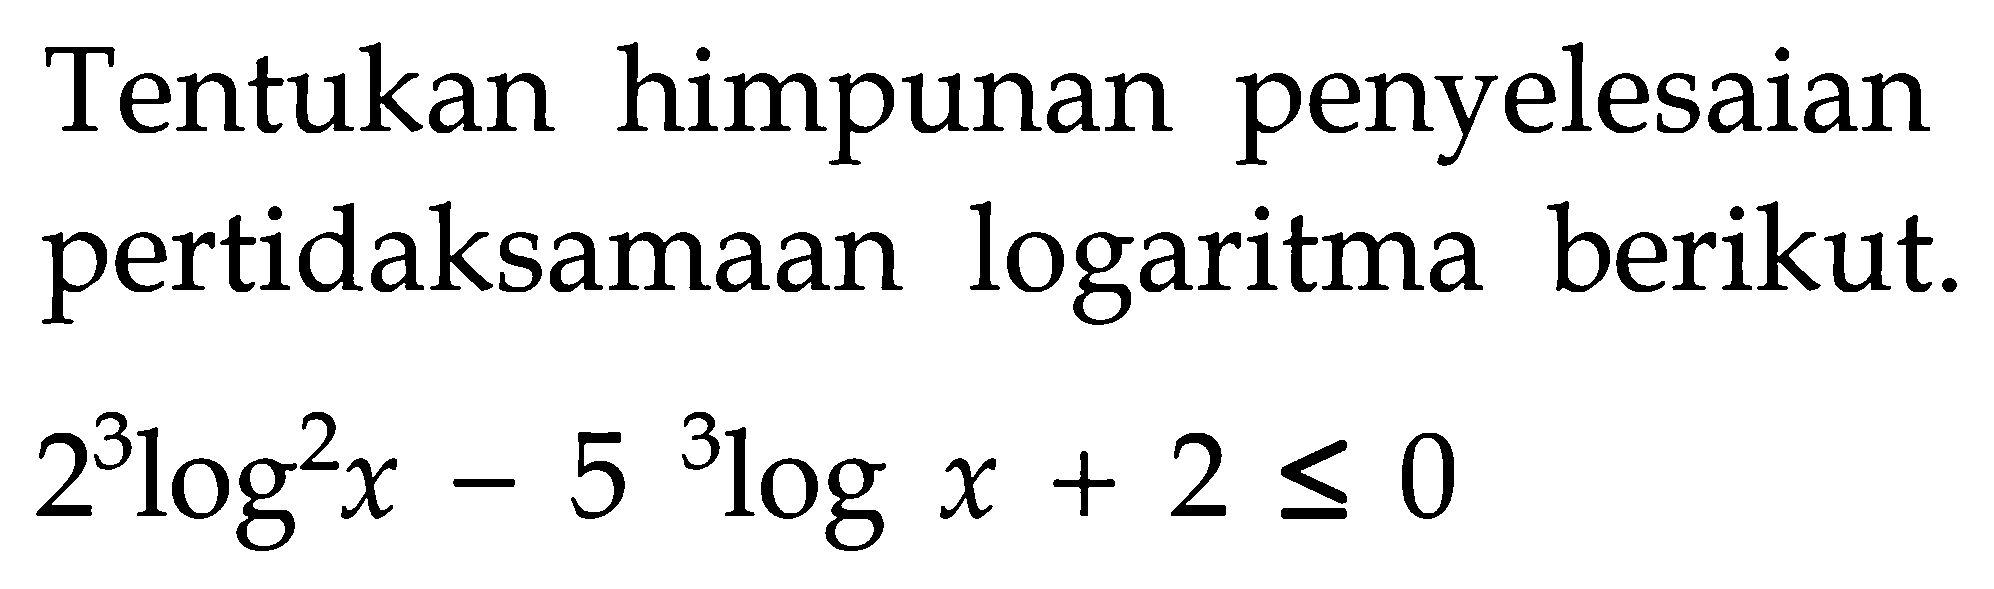 Tentukan himpunan penyelesaian pertidaksamaan logaritma berikut. 2log^2 x - 5 3logx + 2 <= 0